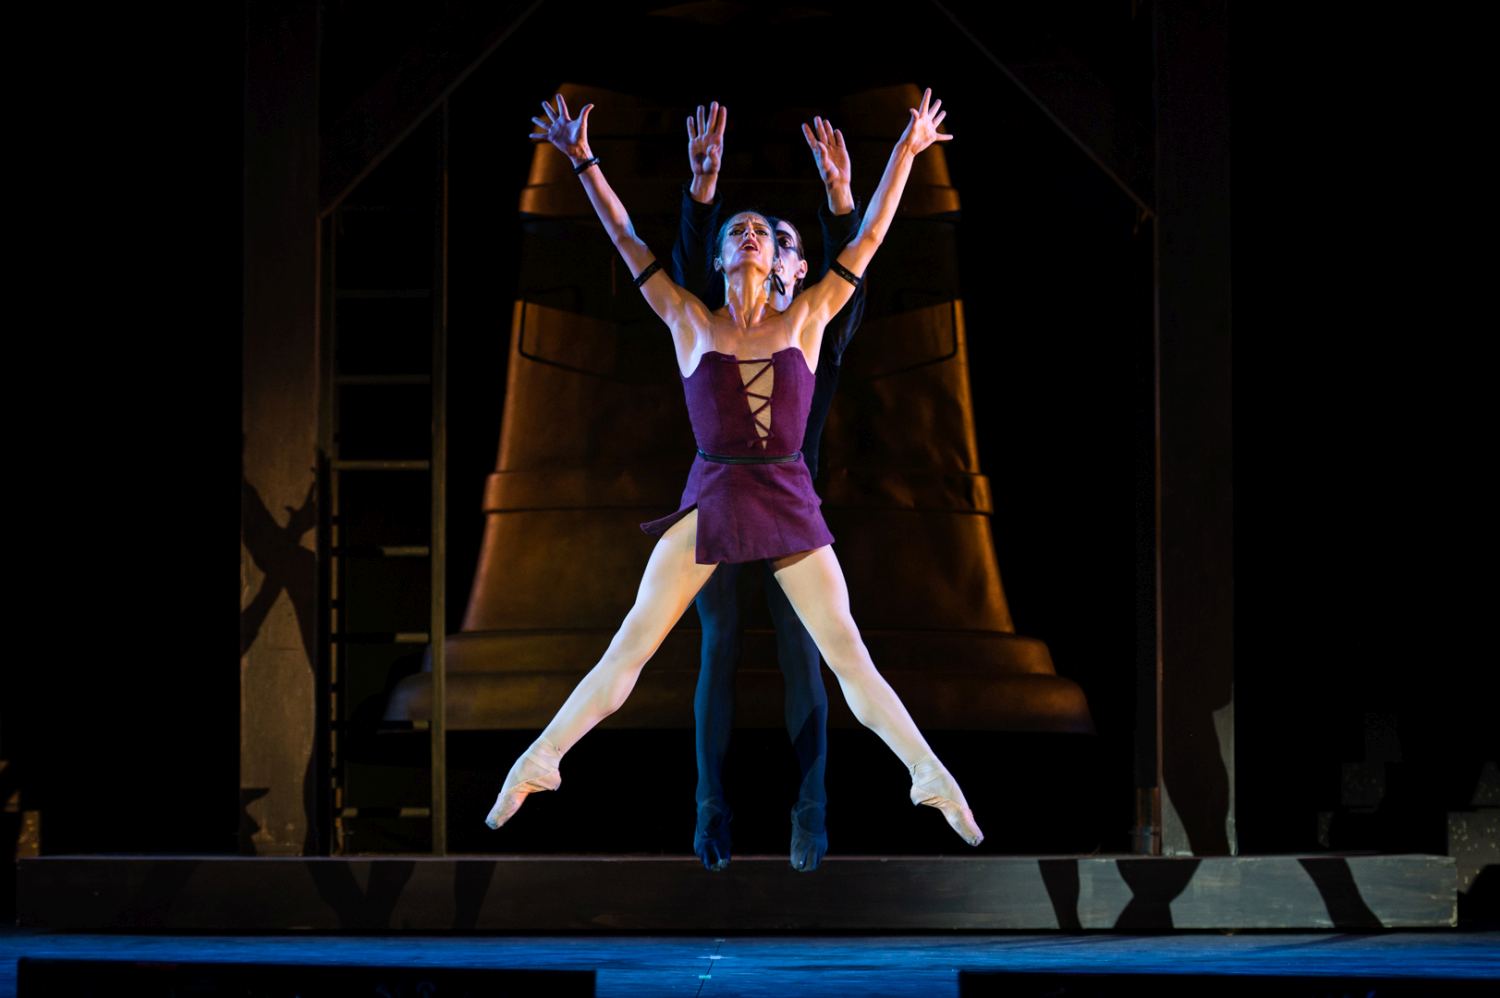 12. S.Salvi (Esmeralda) and C.Cocino (Frollo), “Notre-Dame de Paris” by R.Petit, Ballet of the Teatro dell’Opera di Roma 2022 © F.Sansoni / Teatro dell’Opera di Roma